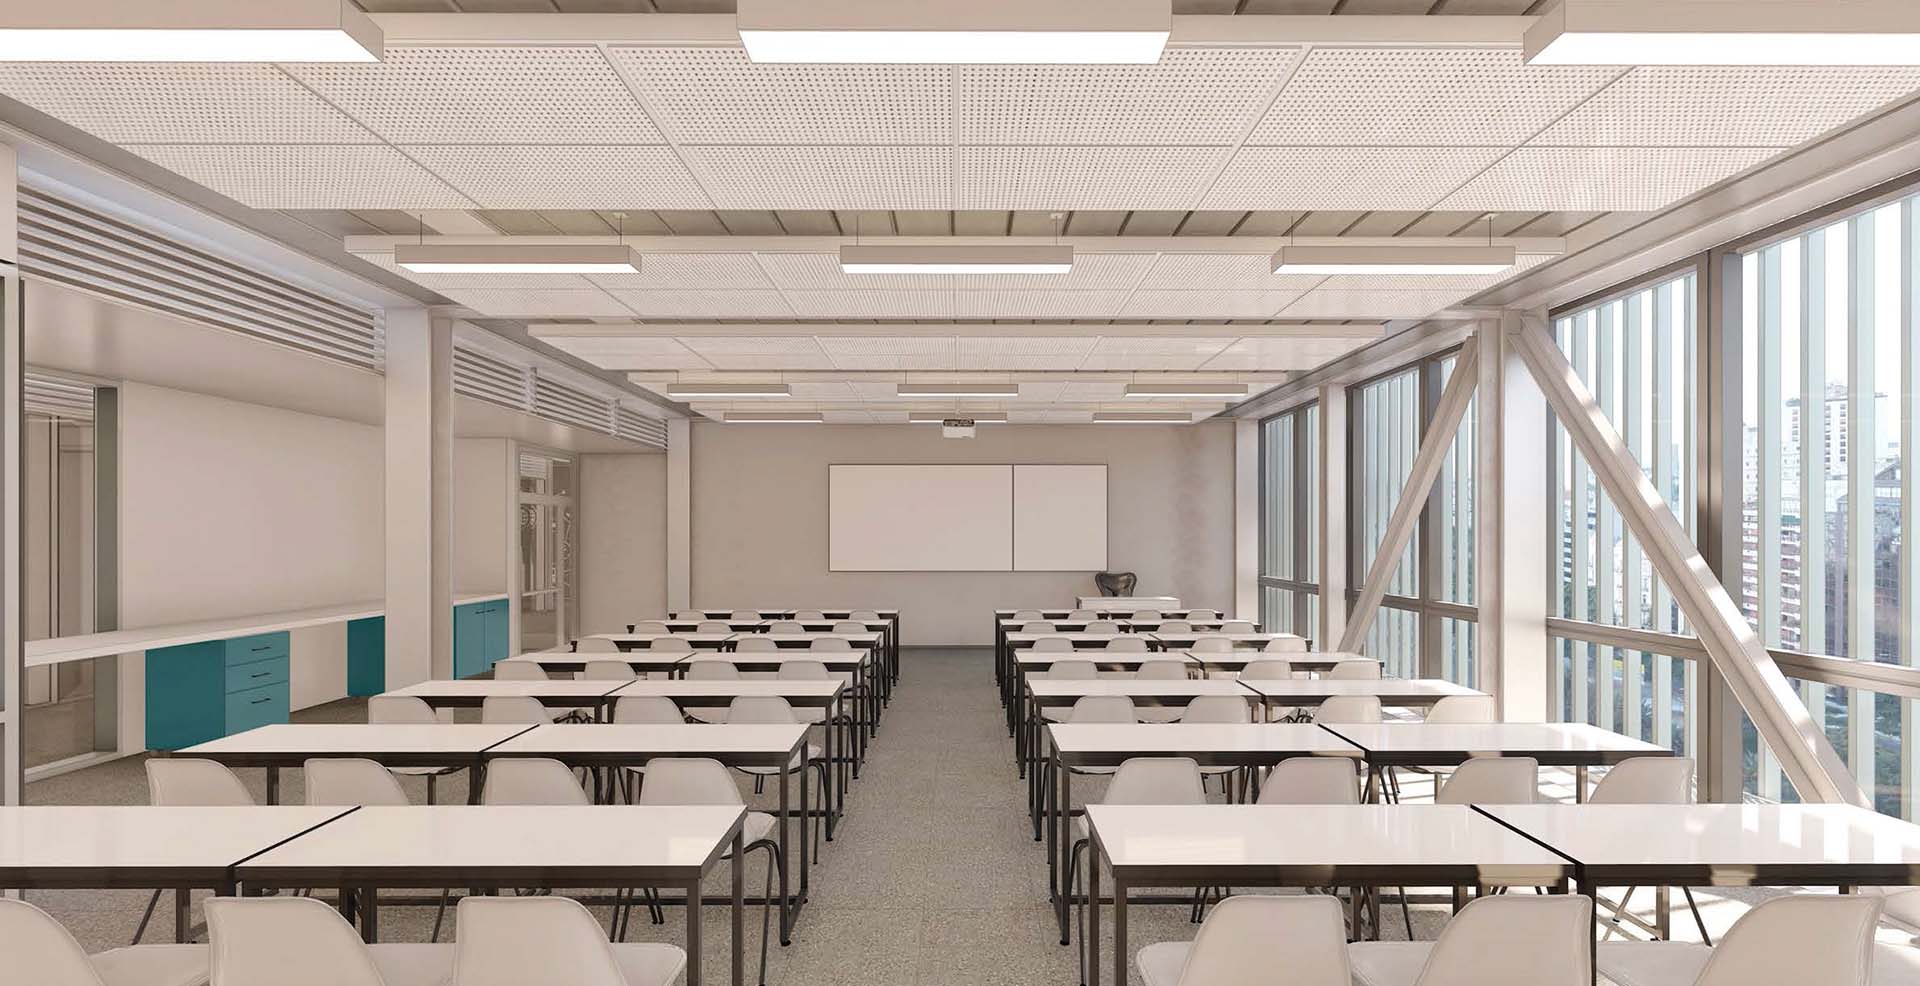 El proyecto de la construcción futura de uso institucional contempla un auditorio, una sala de streaming, espacios de coworking, áreas abiertas y externas, cafetería y aulas en todos los pisos